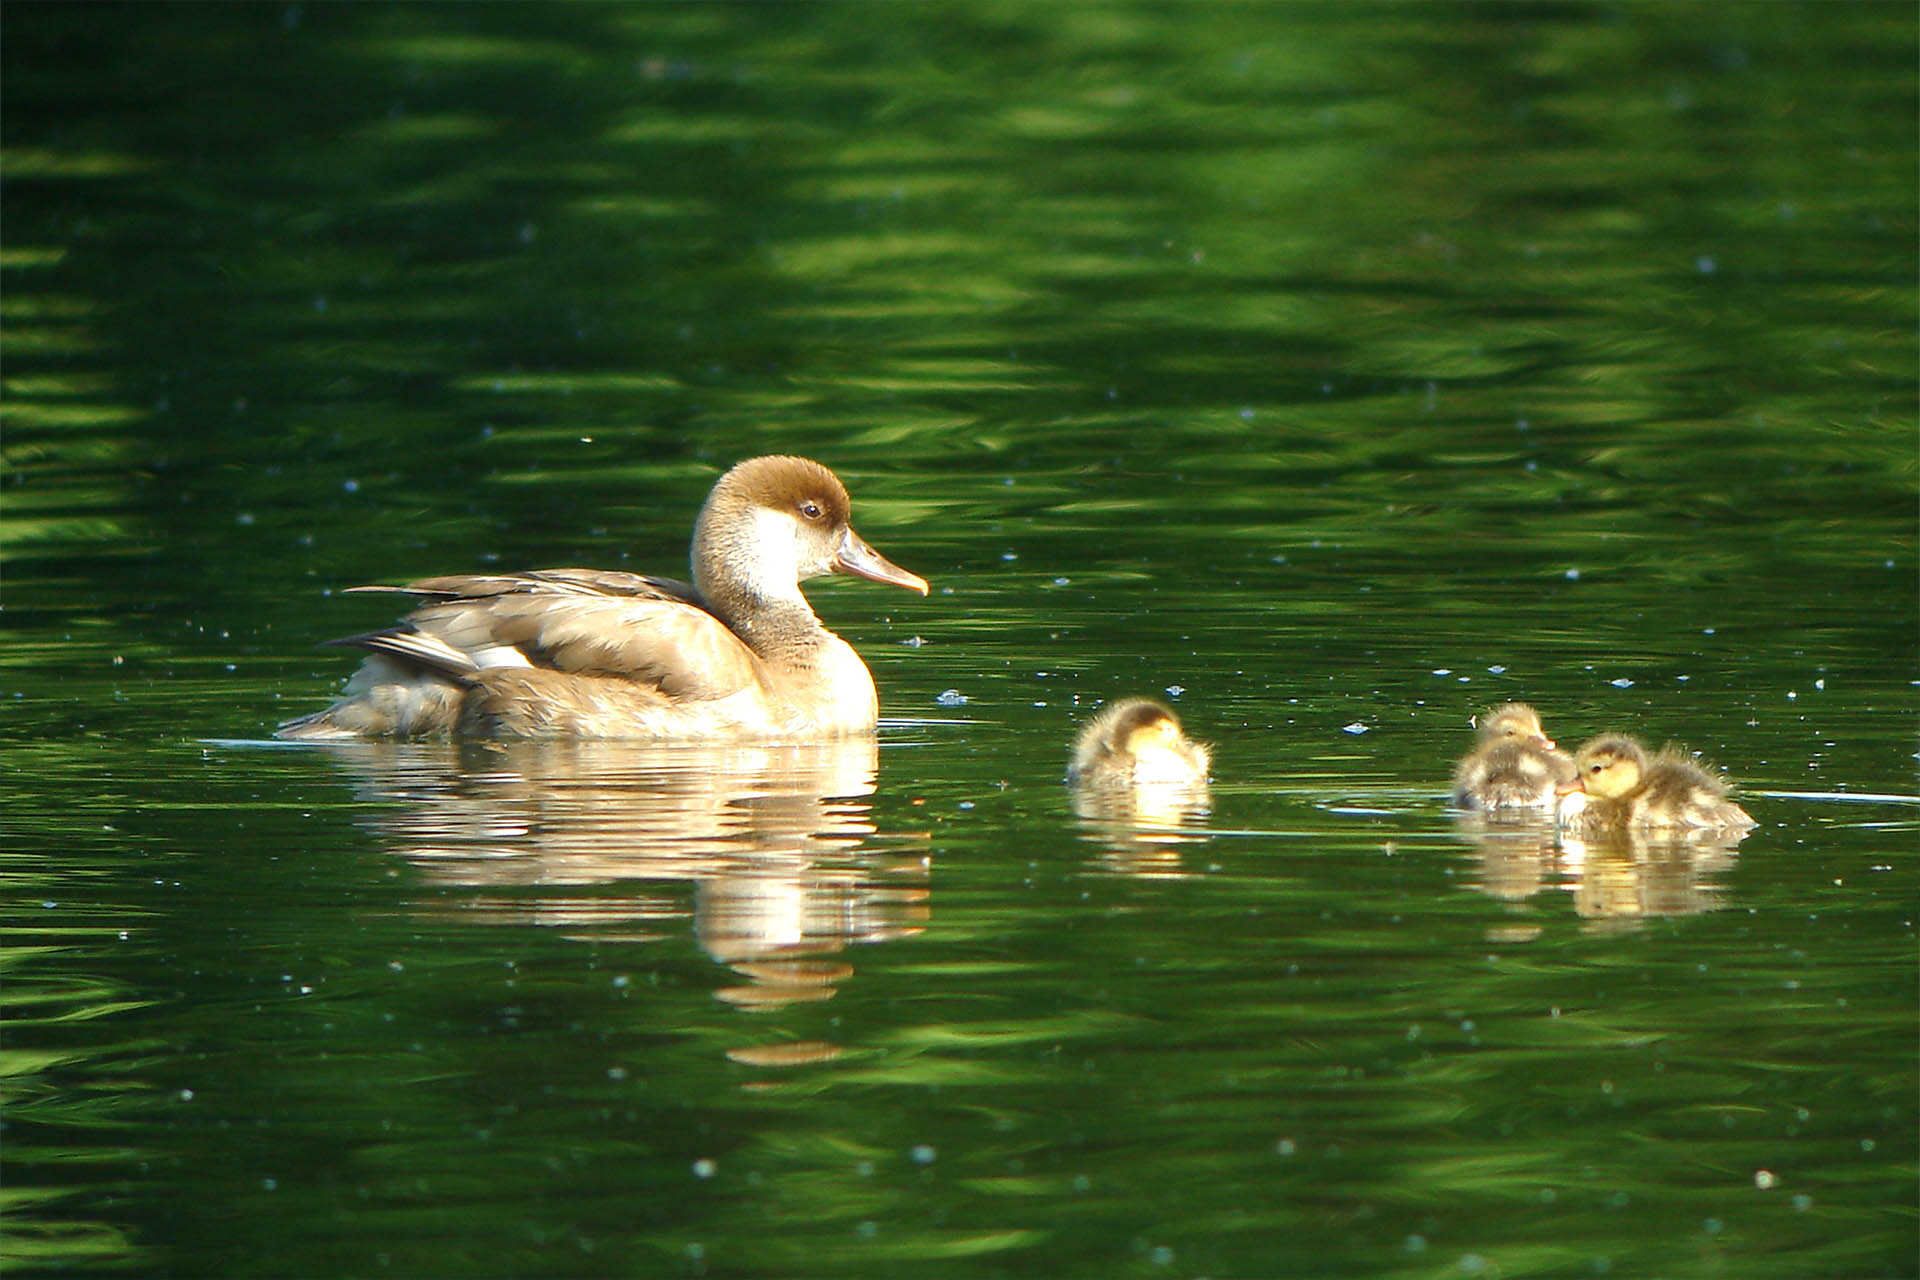 Eine gelbliche Ente schwimmt mit ihren drei Küken auf dem Wasser.